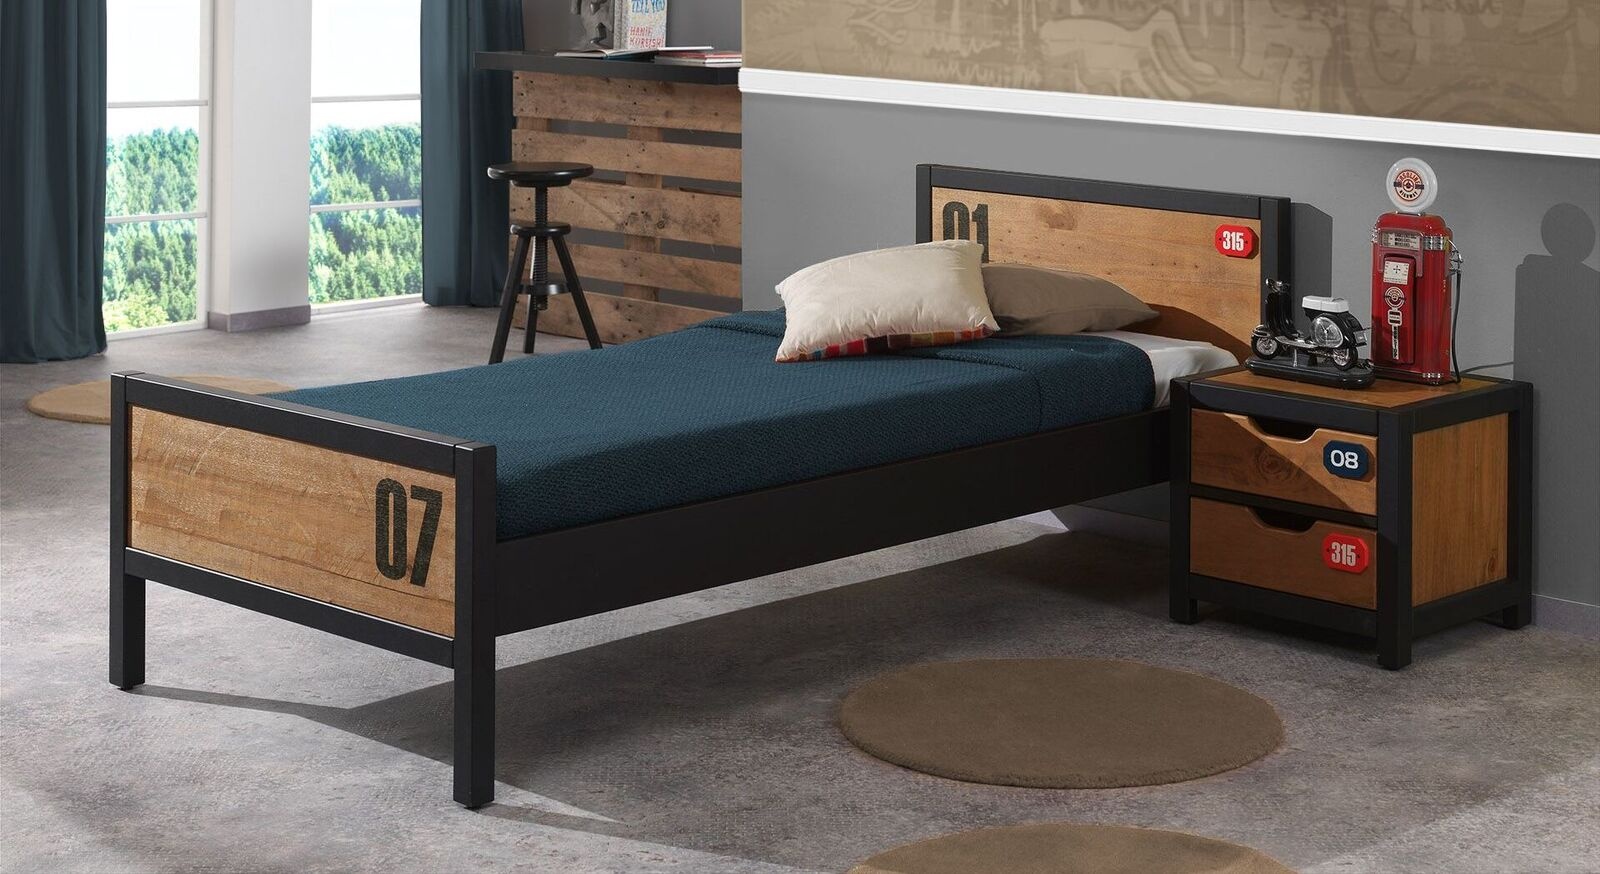 Trendiges Jugendbett mit Nachttisch im Industrial-Look - Beli